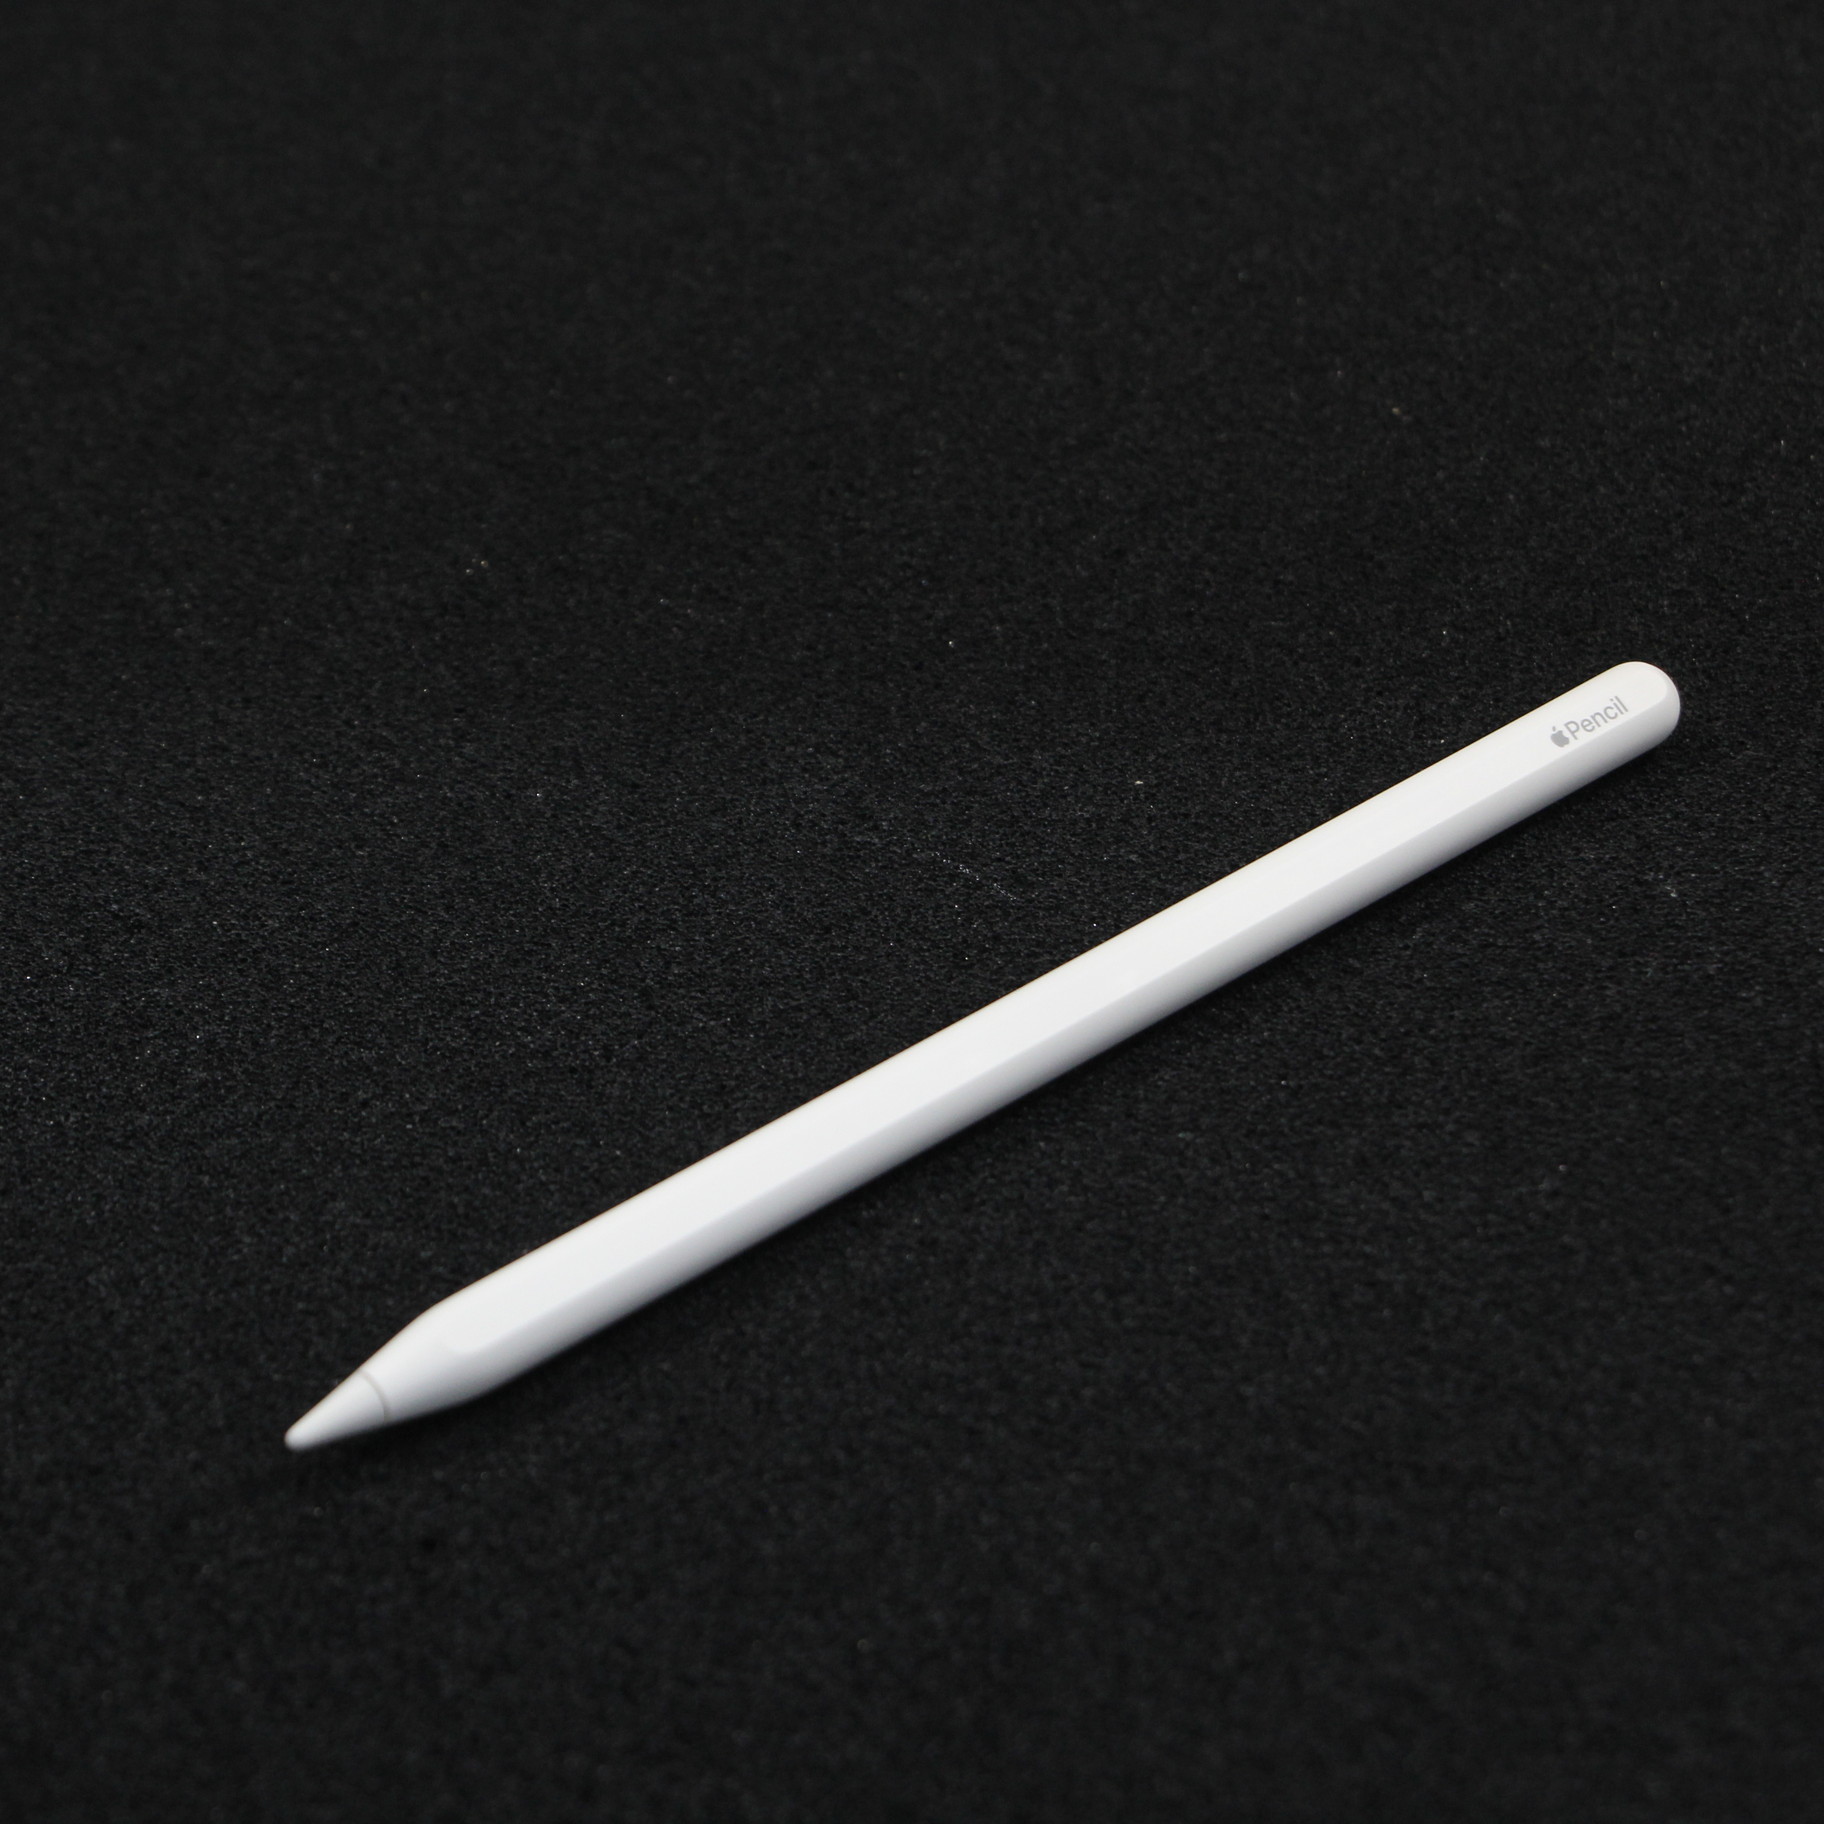 【新品未開封】Apple pencil アップルペンシル 第ニ世代